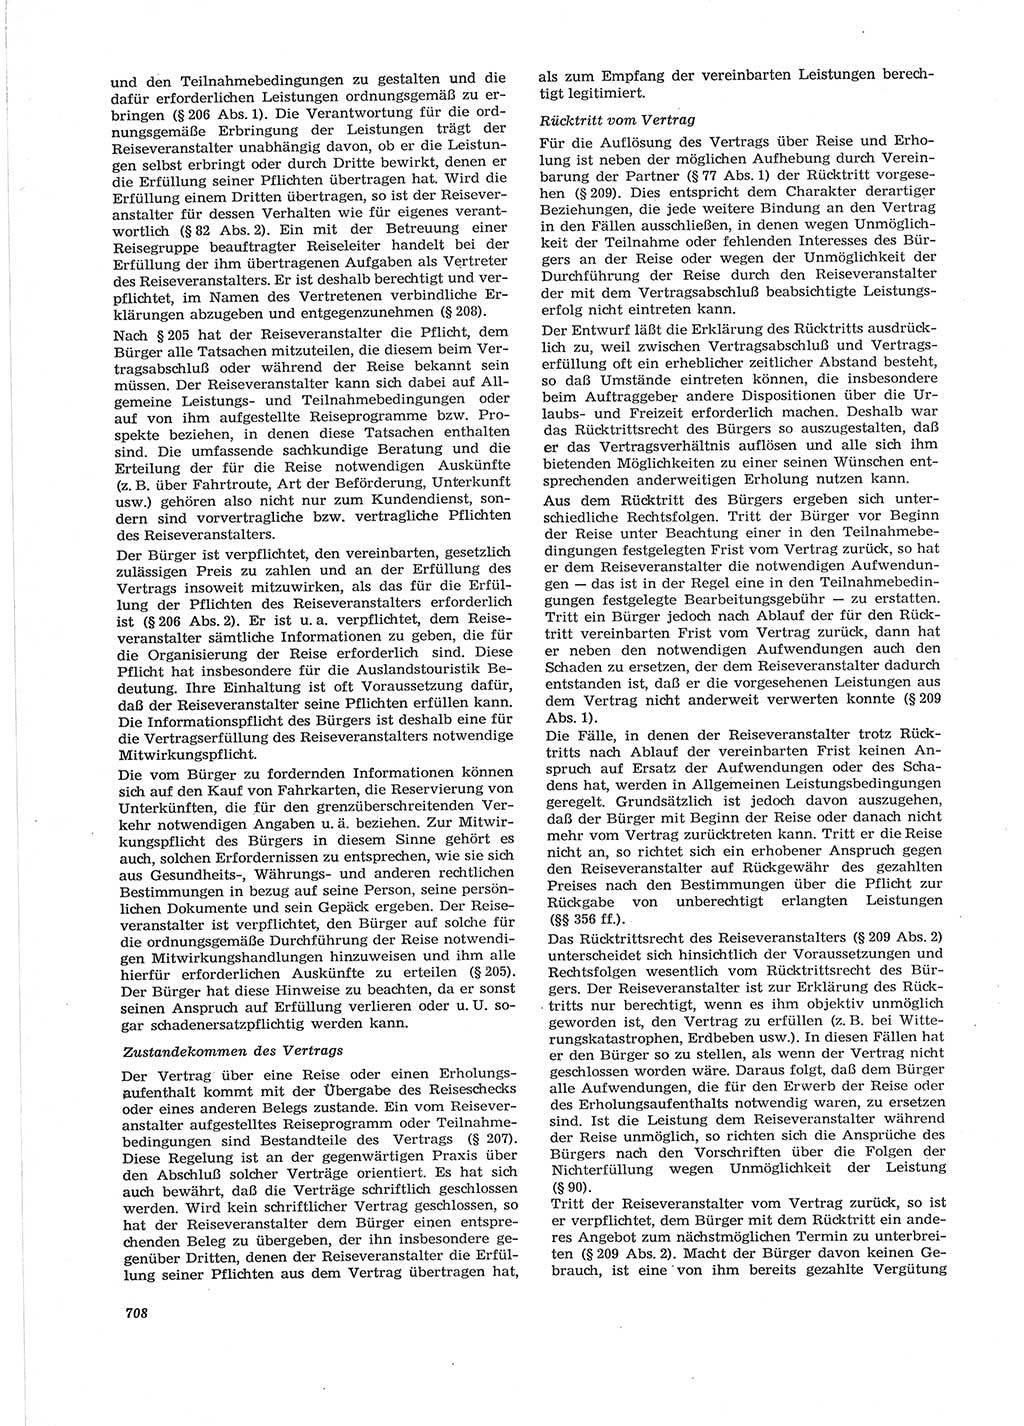 Neue Justiz (NJ), Zeitschrift für Recht und Rechtswissenschaft [Deutsche Demokratische Republik (DDR)], 28. Jahrgang 1974, Seite 708 (NJ DDR 1974, S. 708)